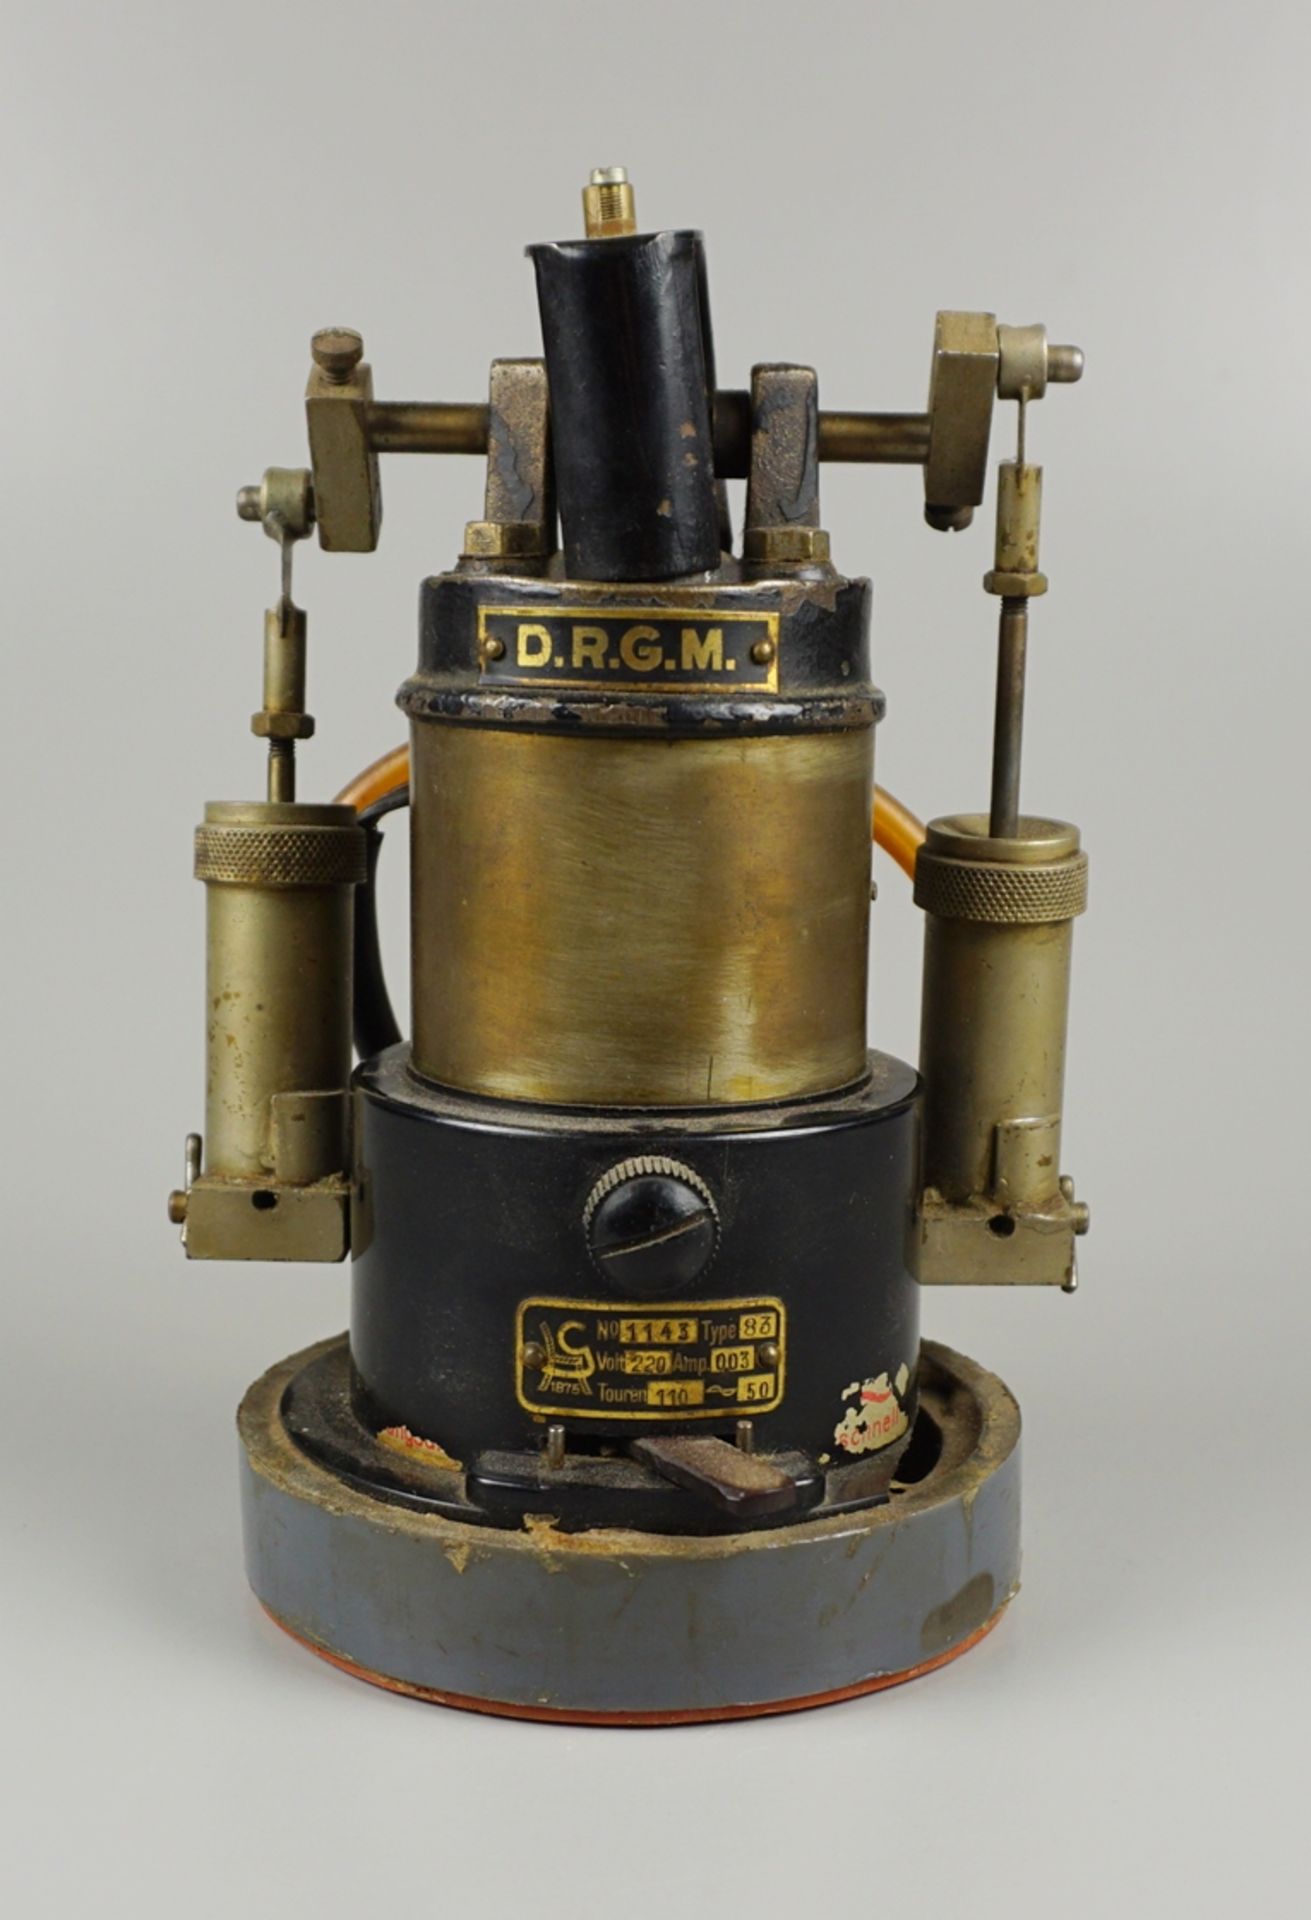 Zweikolben-Pumpe, D.R.G.M., ungedeutete Firmenmarke, gegründet 1875